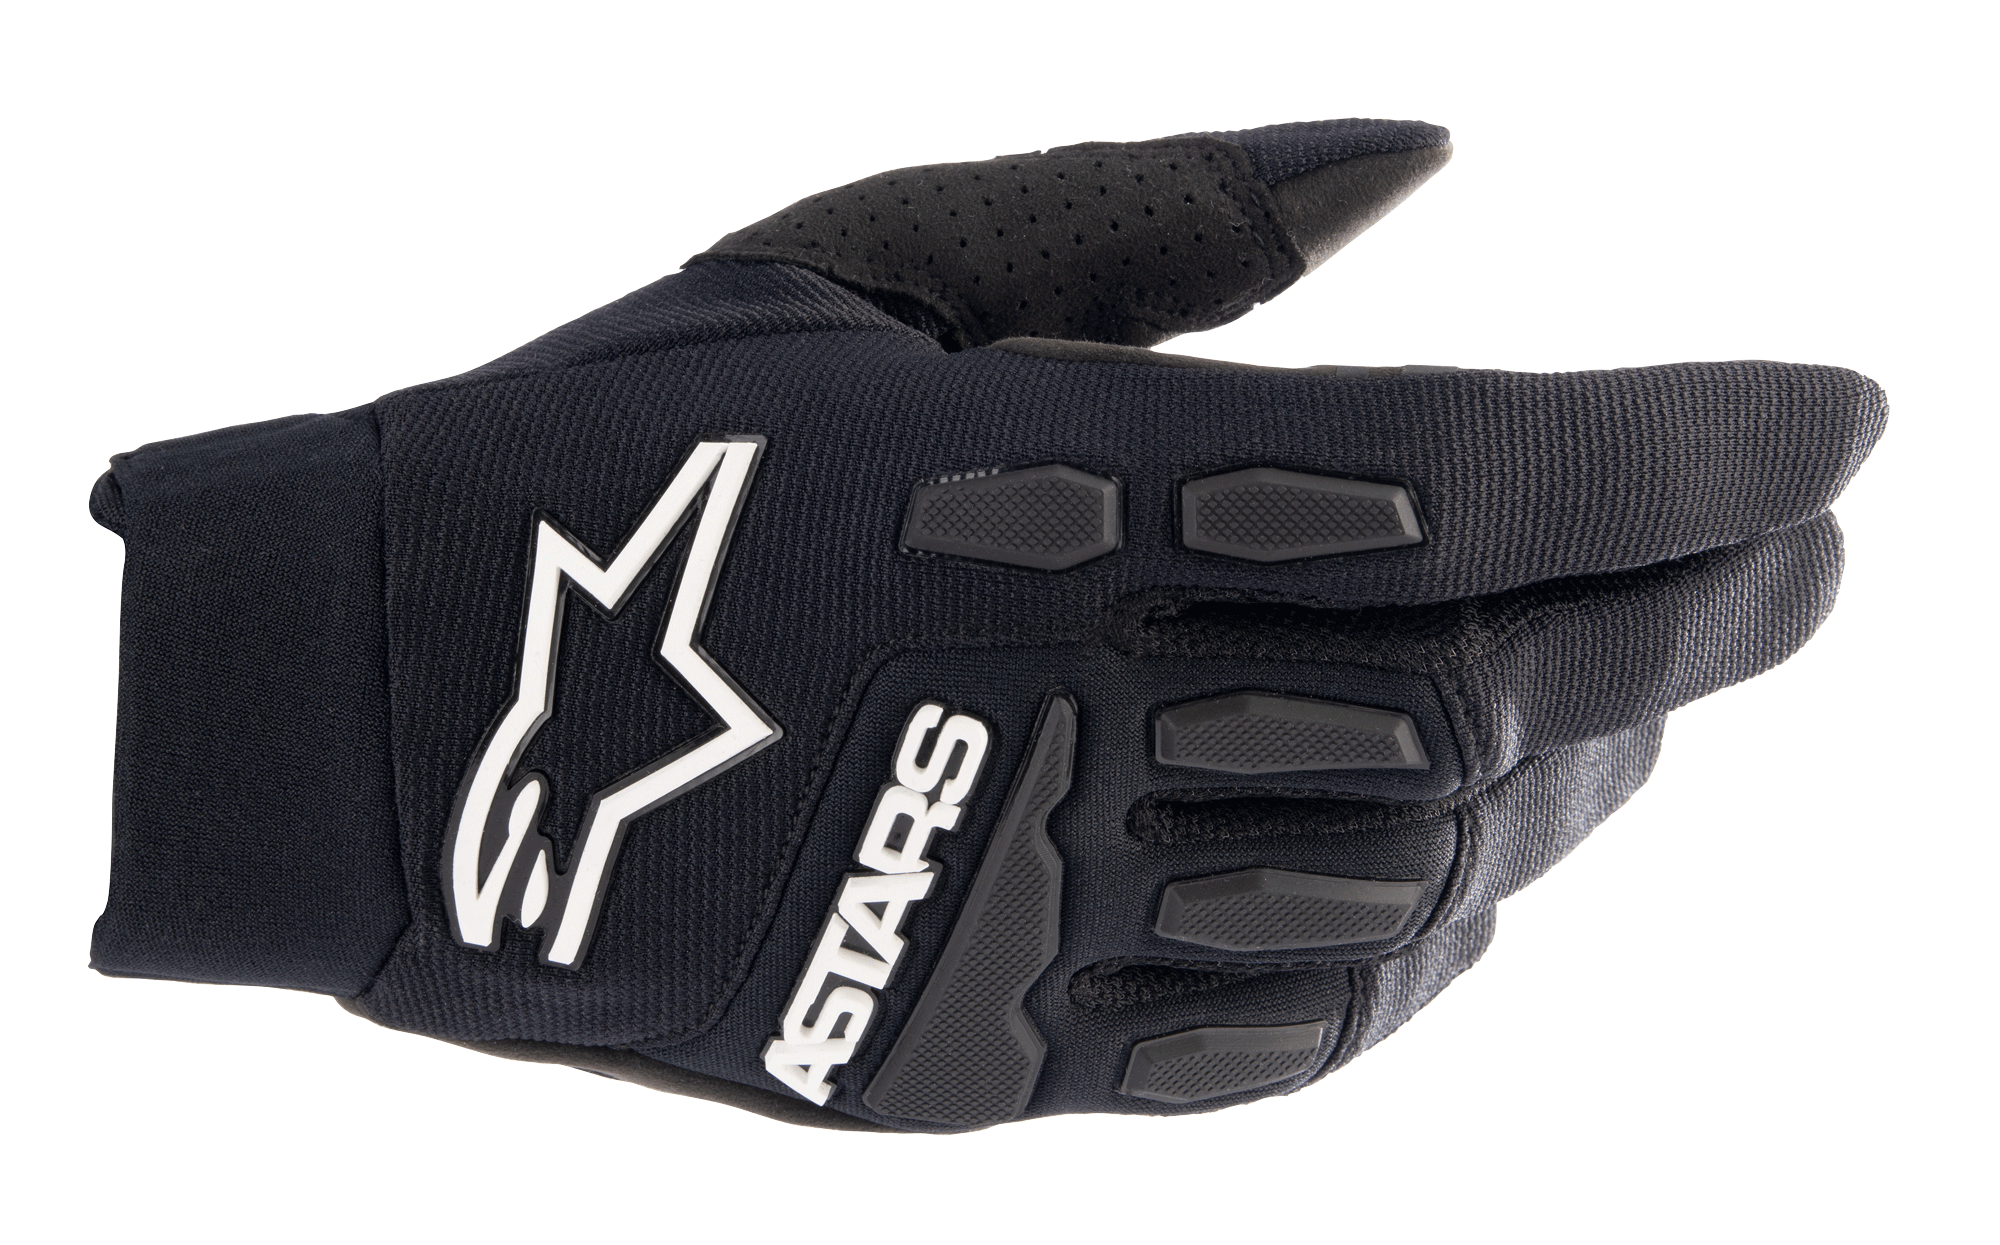 Full Bore Xt Gloves -